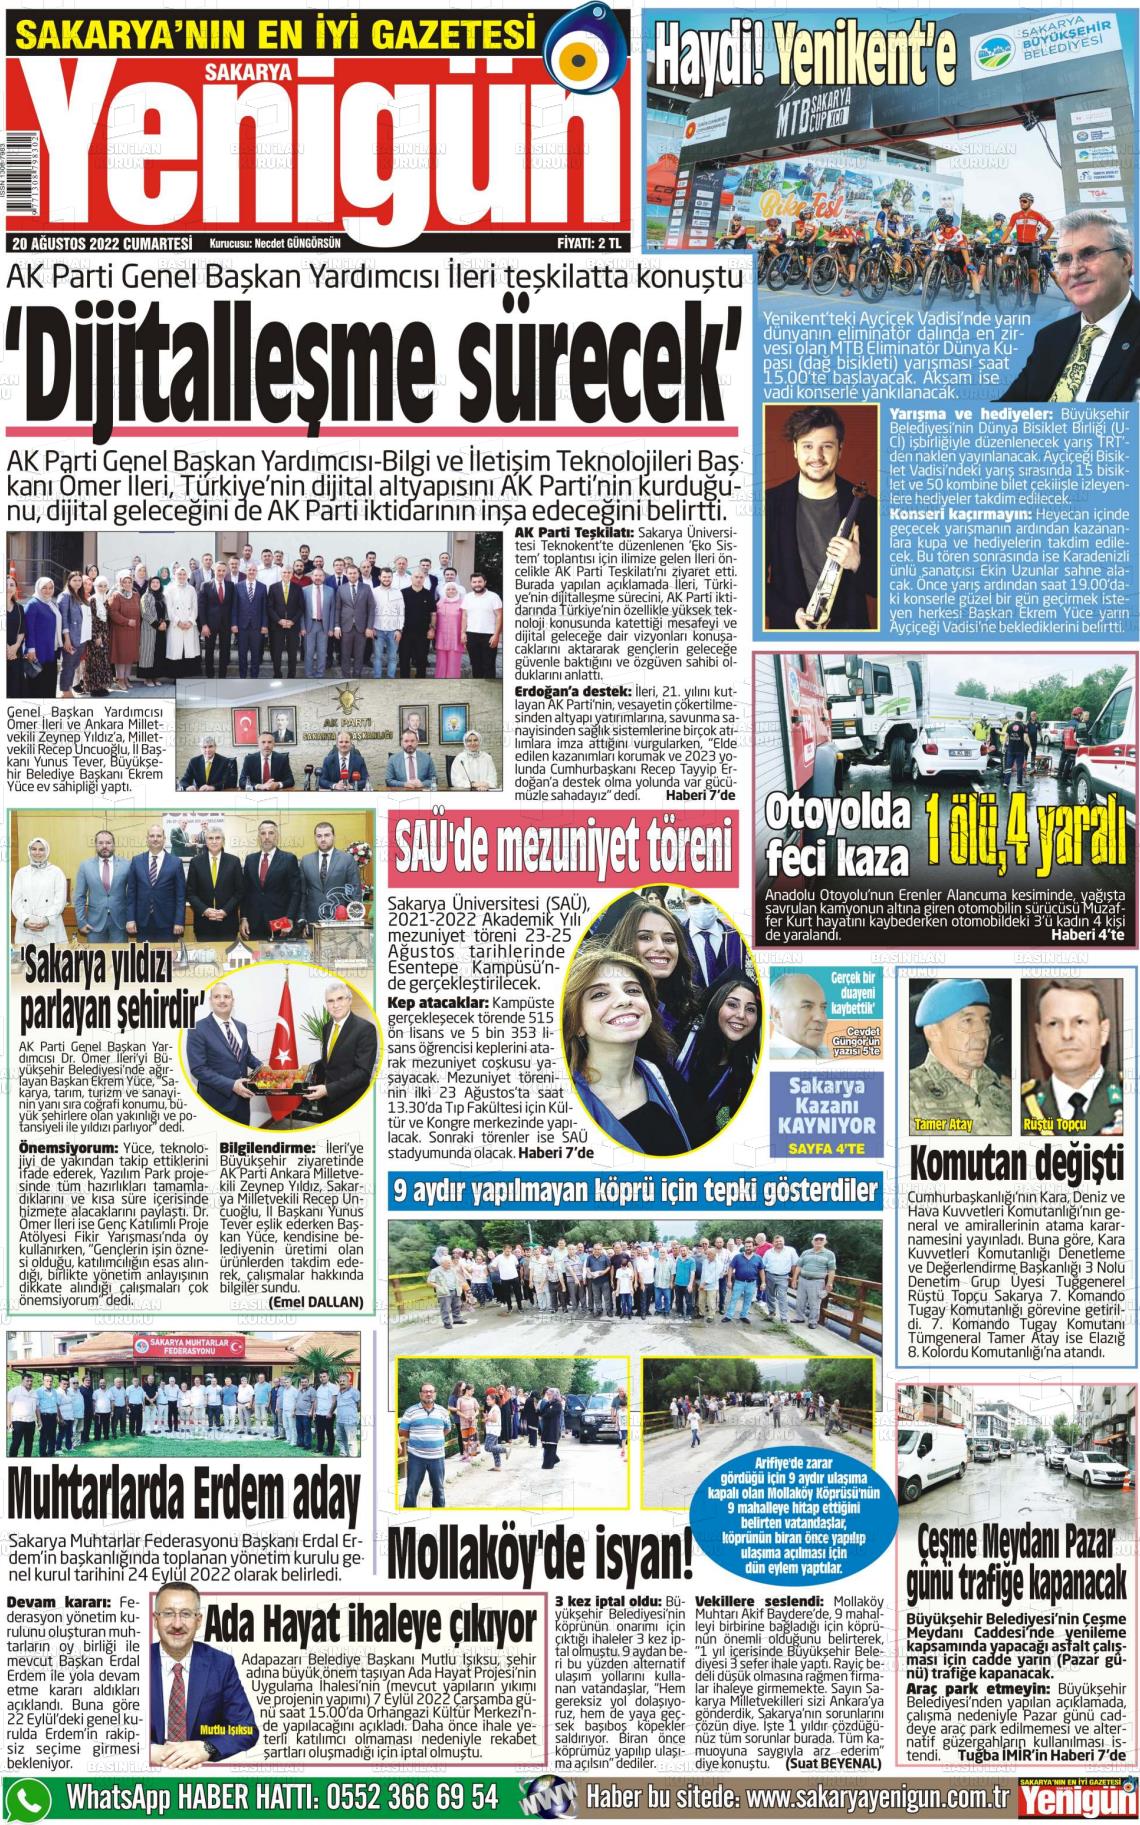 20 Ağustos 2022 Sakarya Yenigün Gazete Manşeti